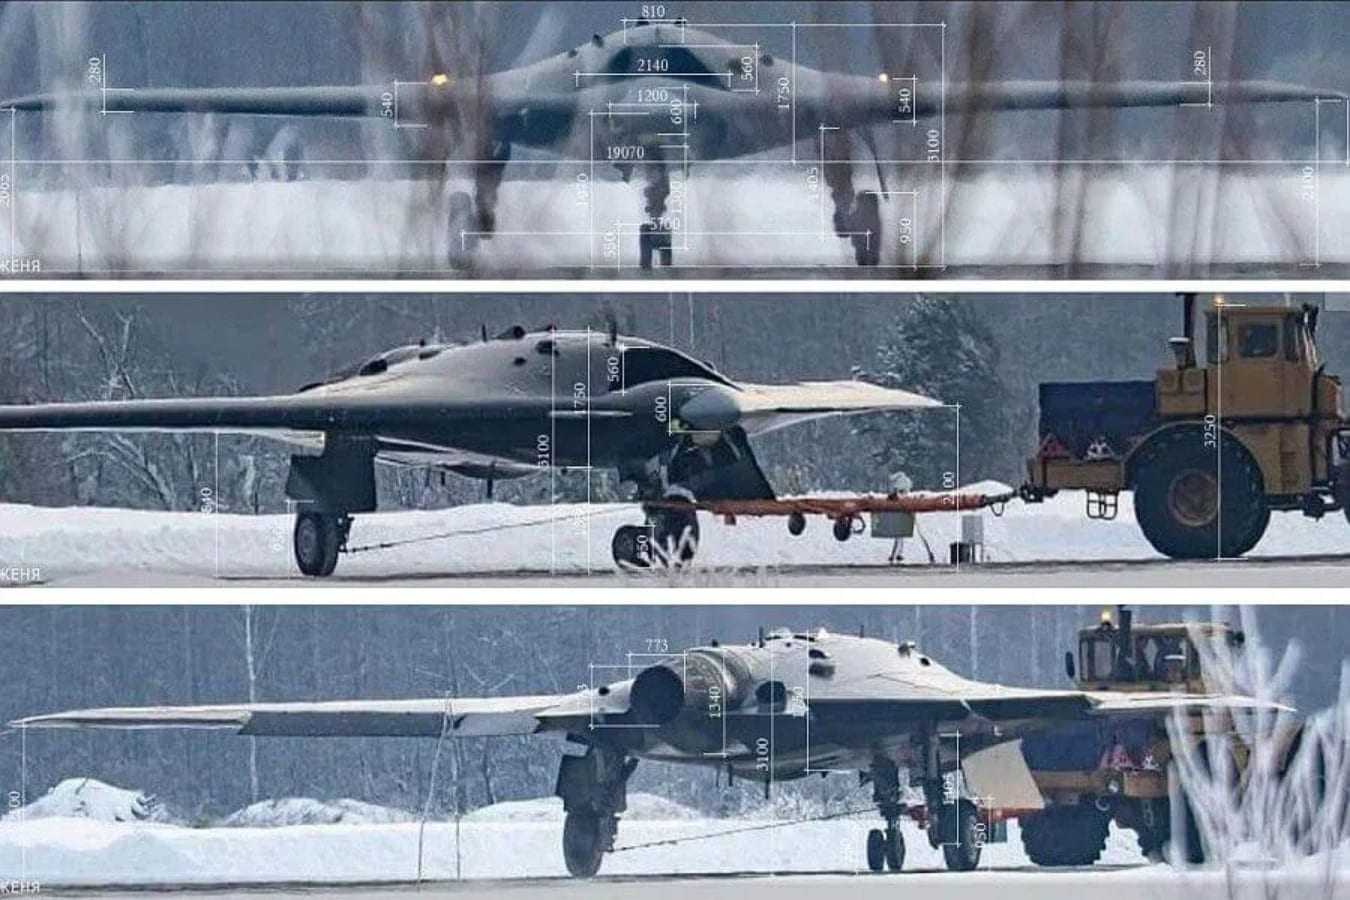 Ρωσικό S-70 “Okhotnik” – το stealth drone